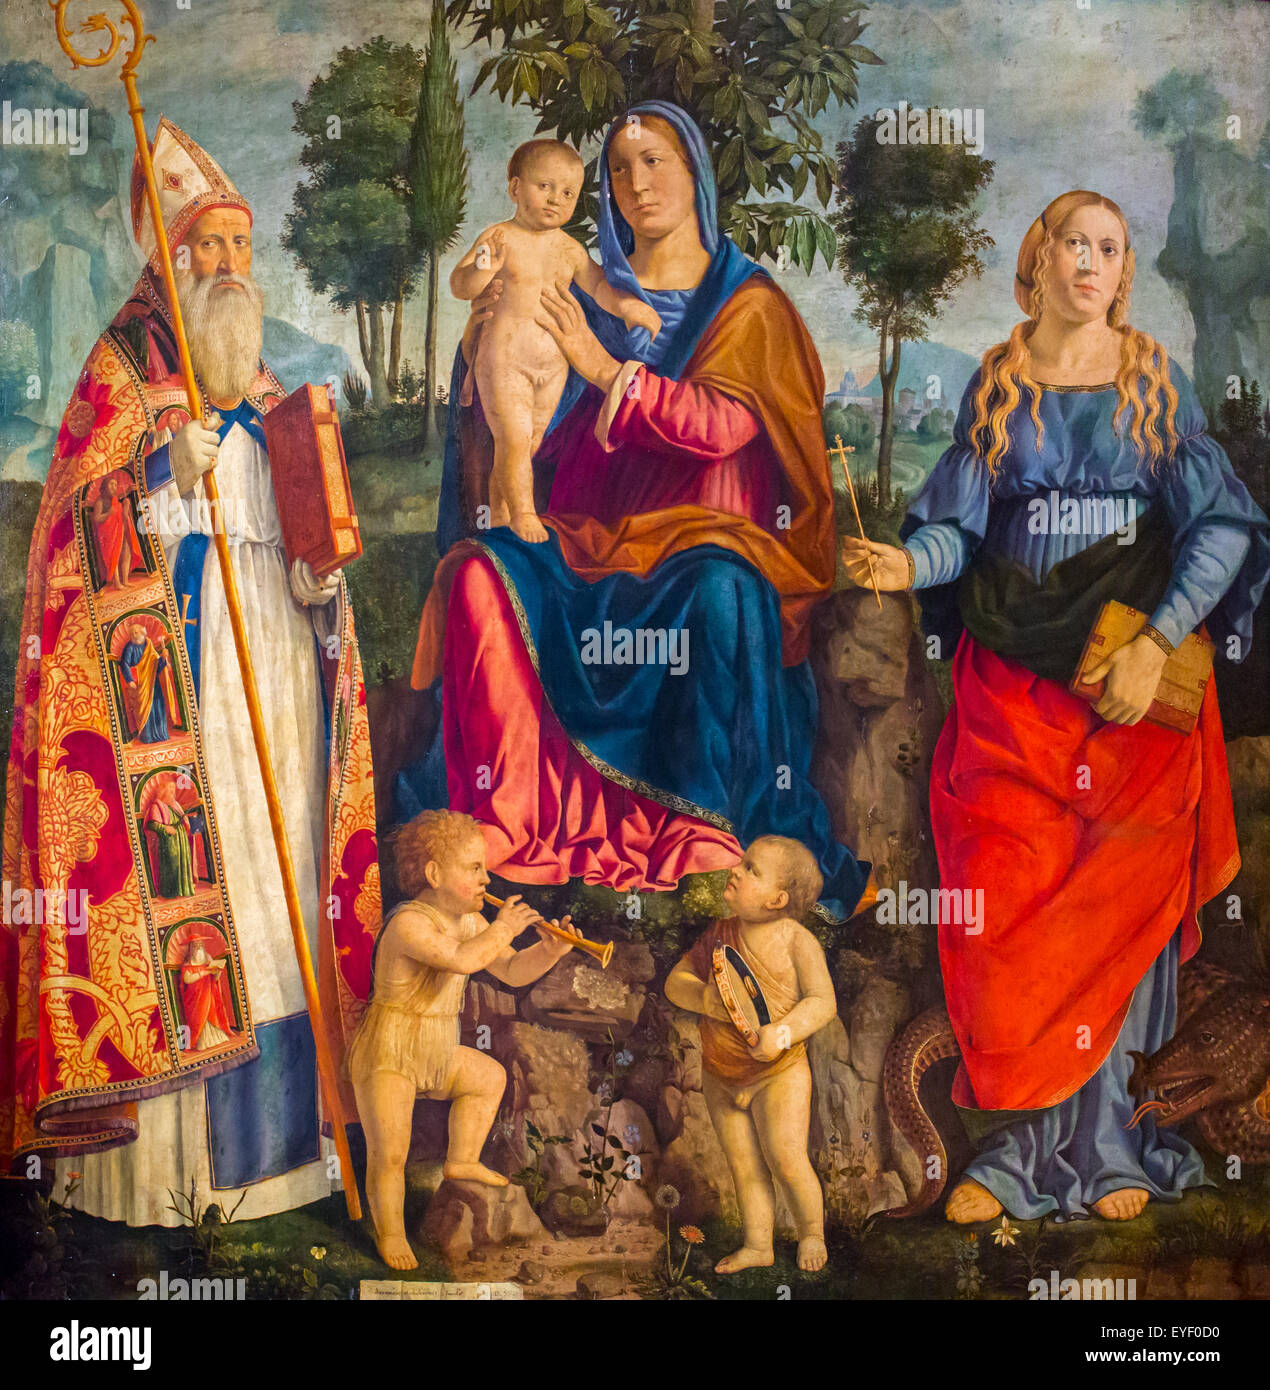 Madonna mit Kind zwischen Margaret und Augustinus, mit zwei kleinen Musiker Engel 01.08.2014 - Sammlung des 16. Jahrhunderts Stockfoto